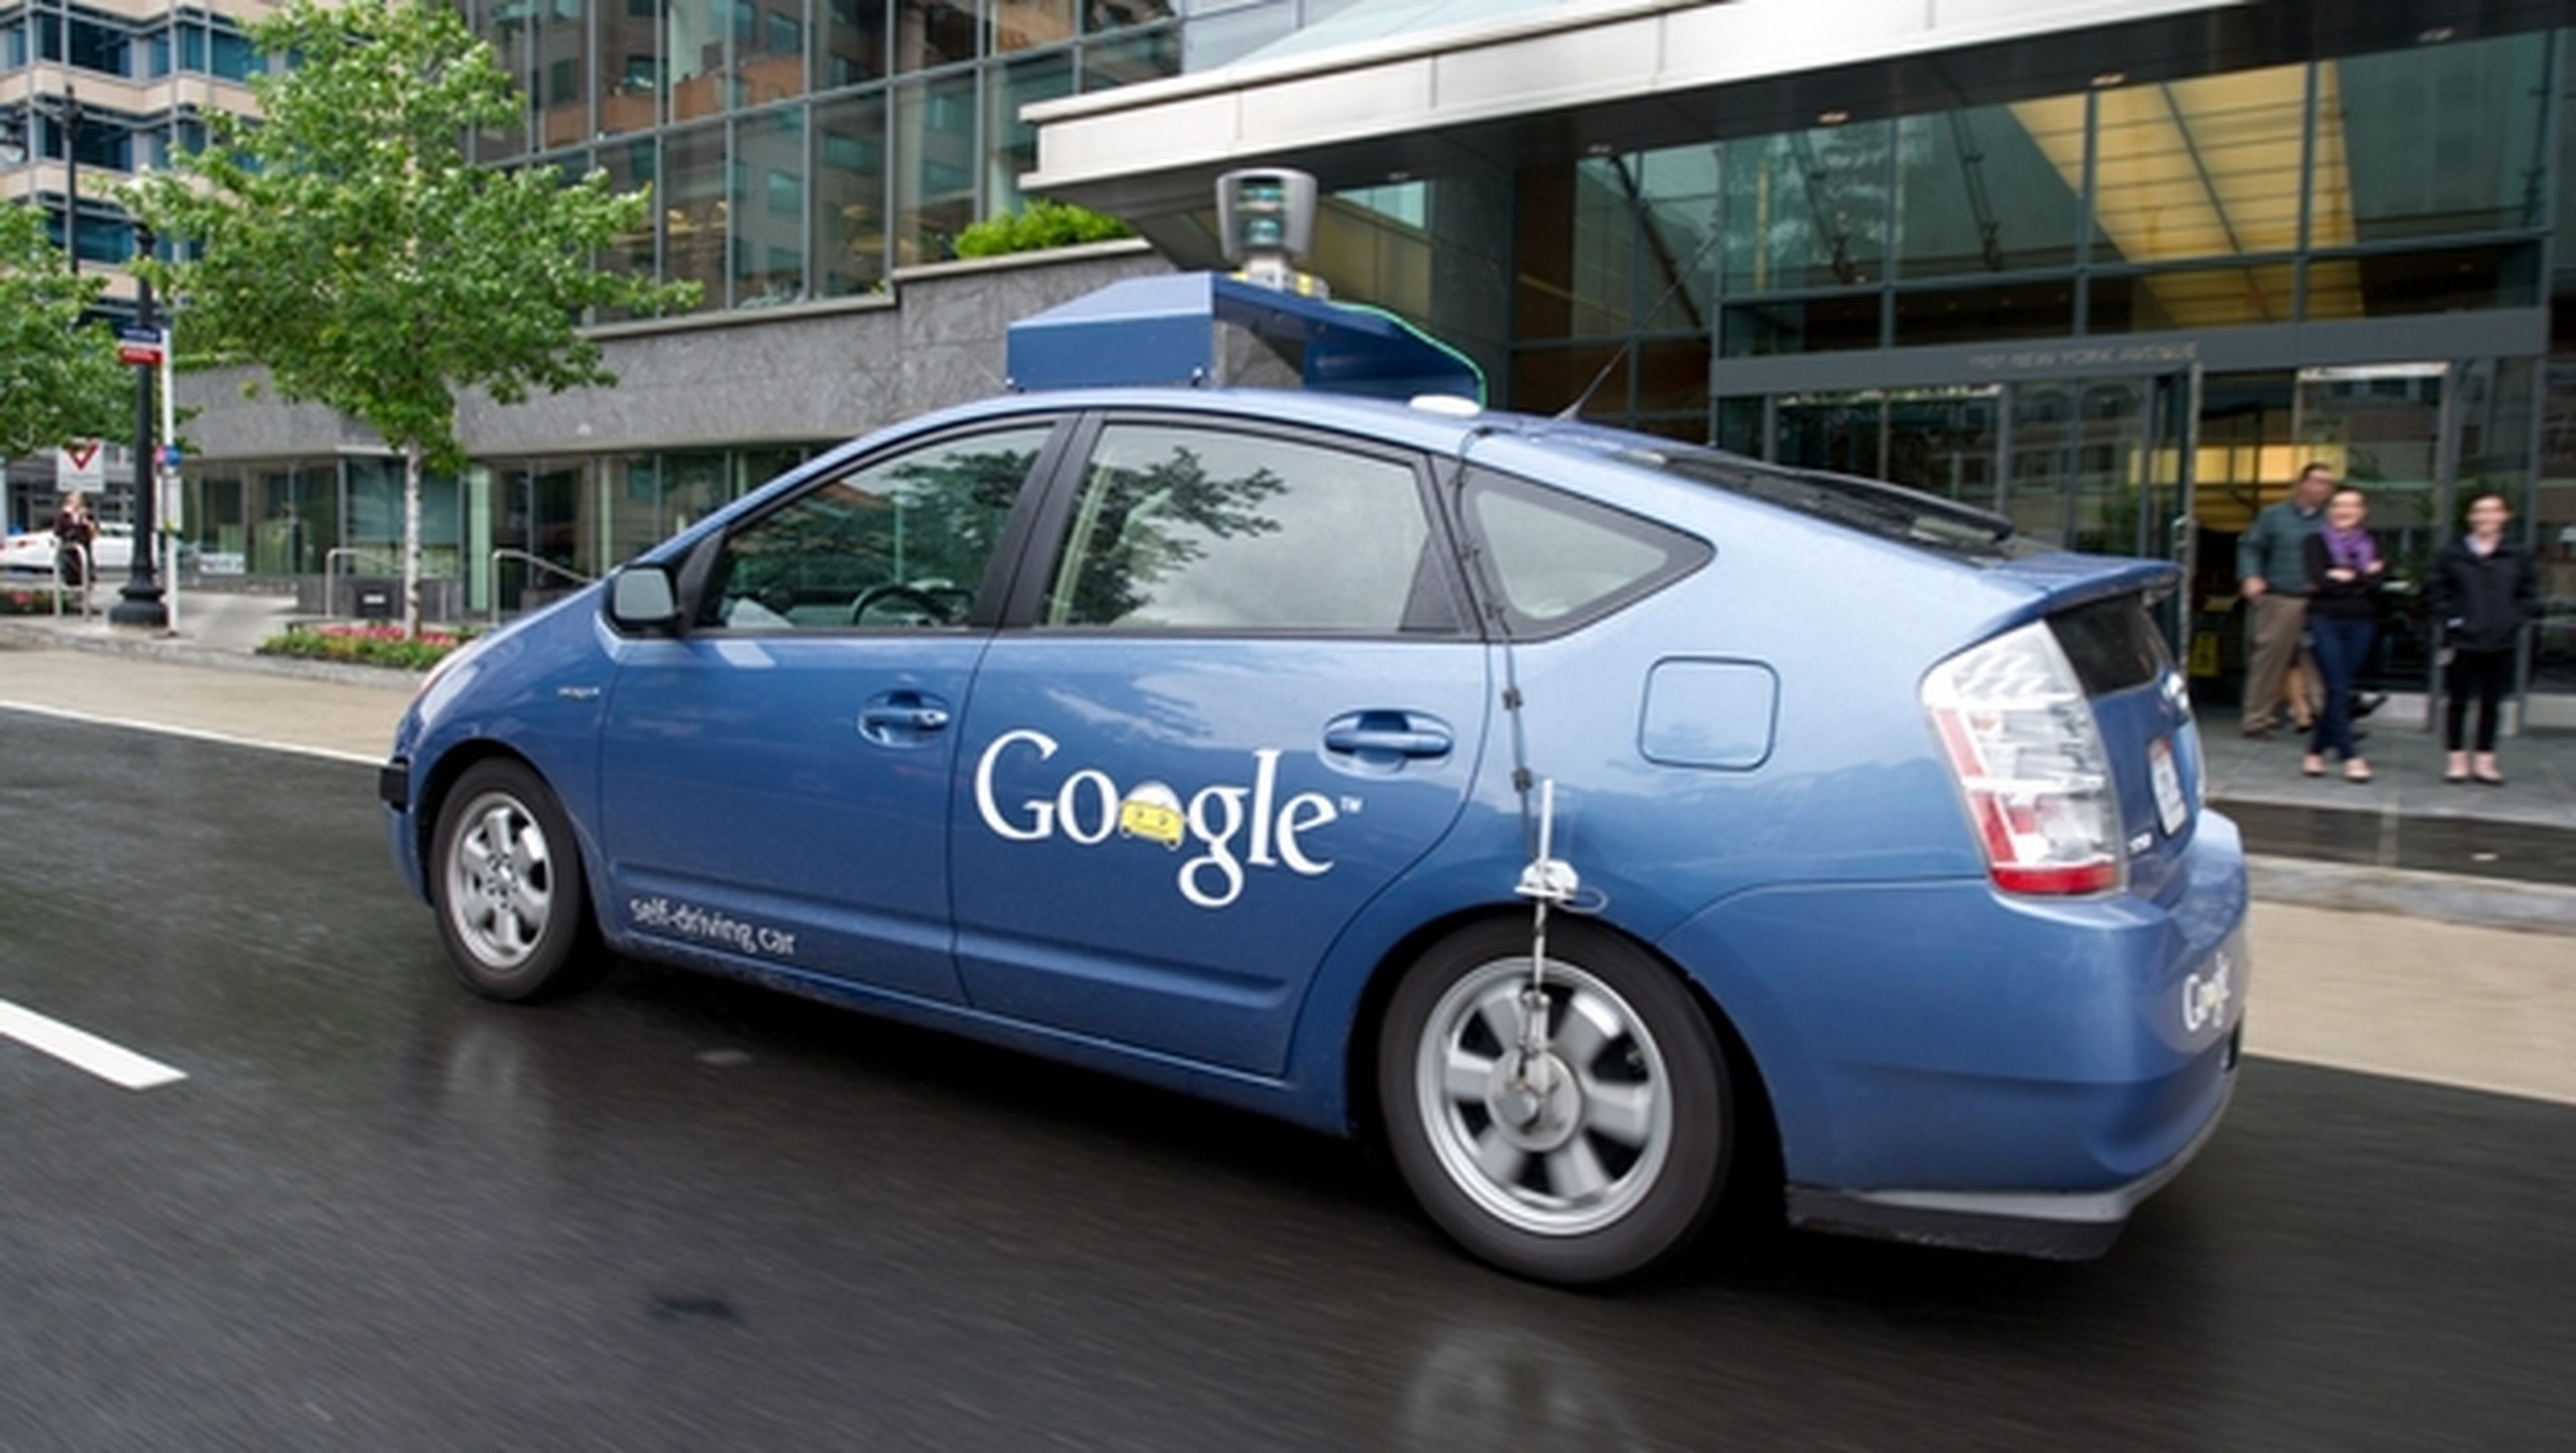 Patente de Google ofrece transporte gratis en coche sin conductor de Google, para llevarte a tiendas o locales de ocio